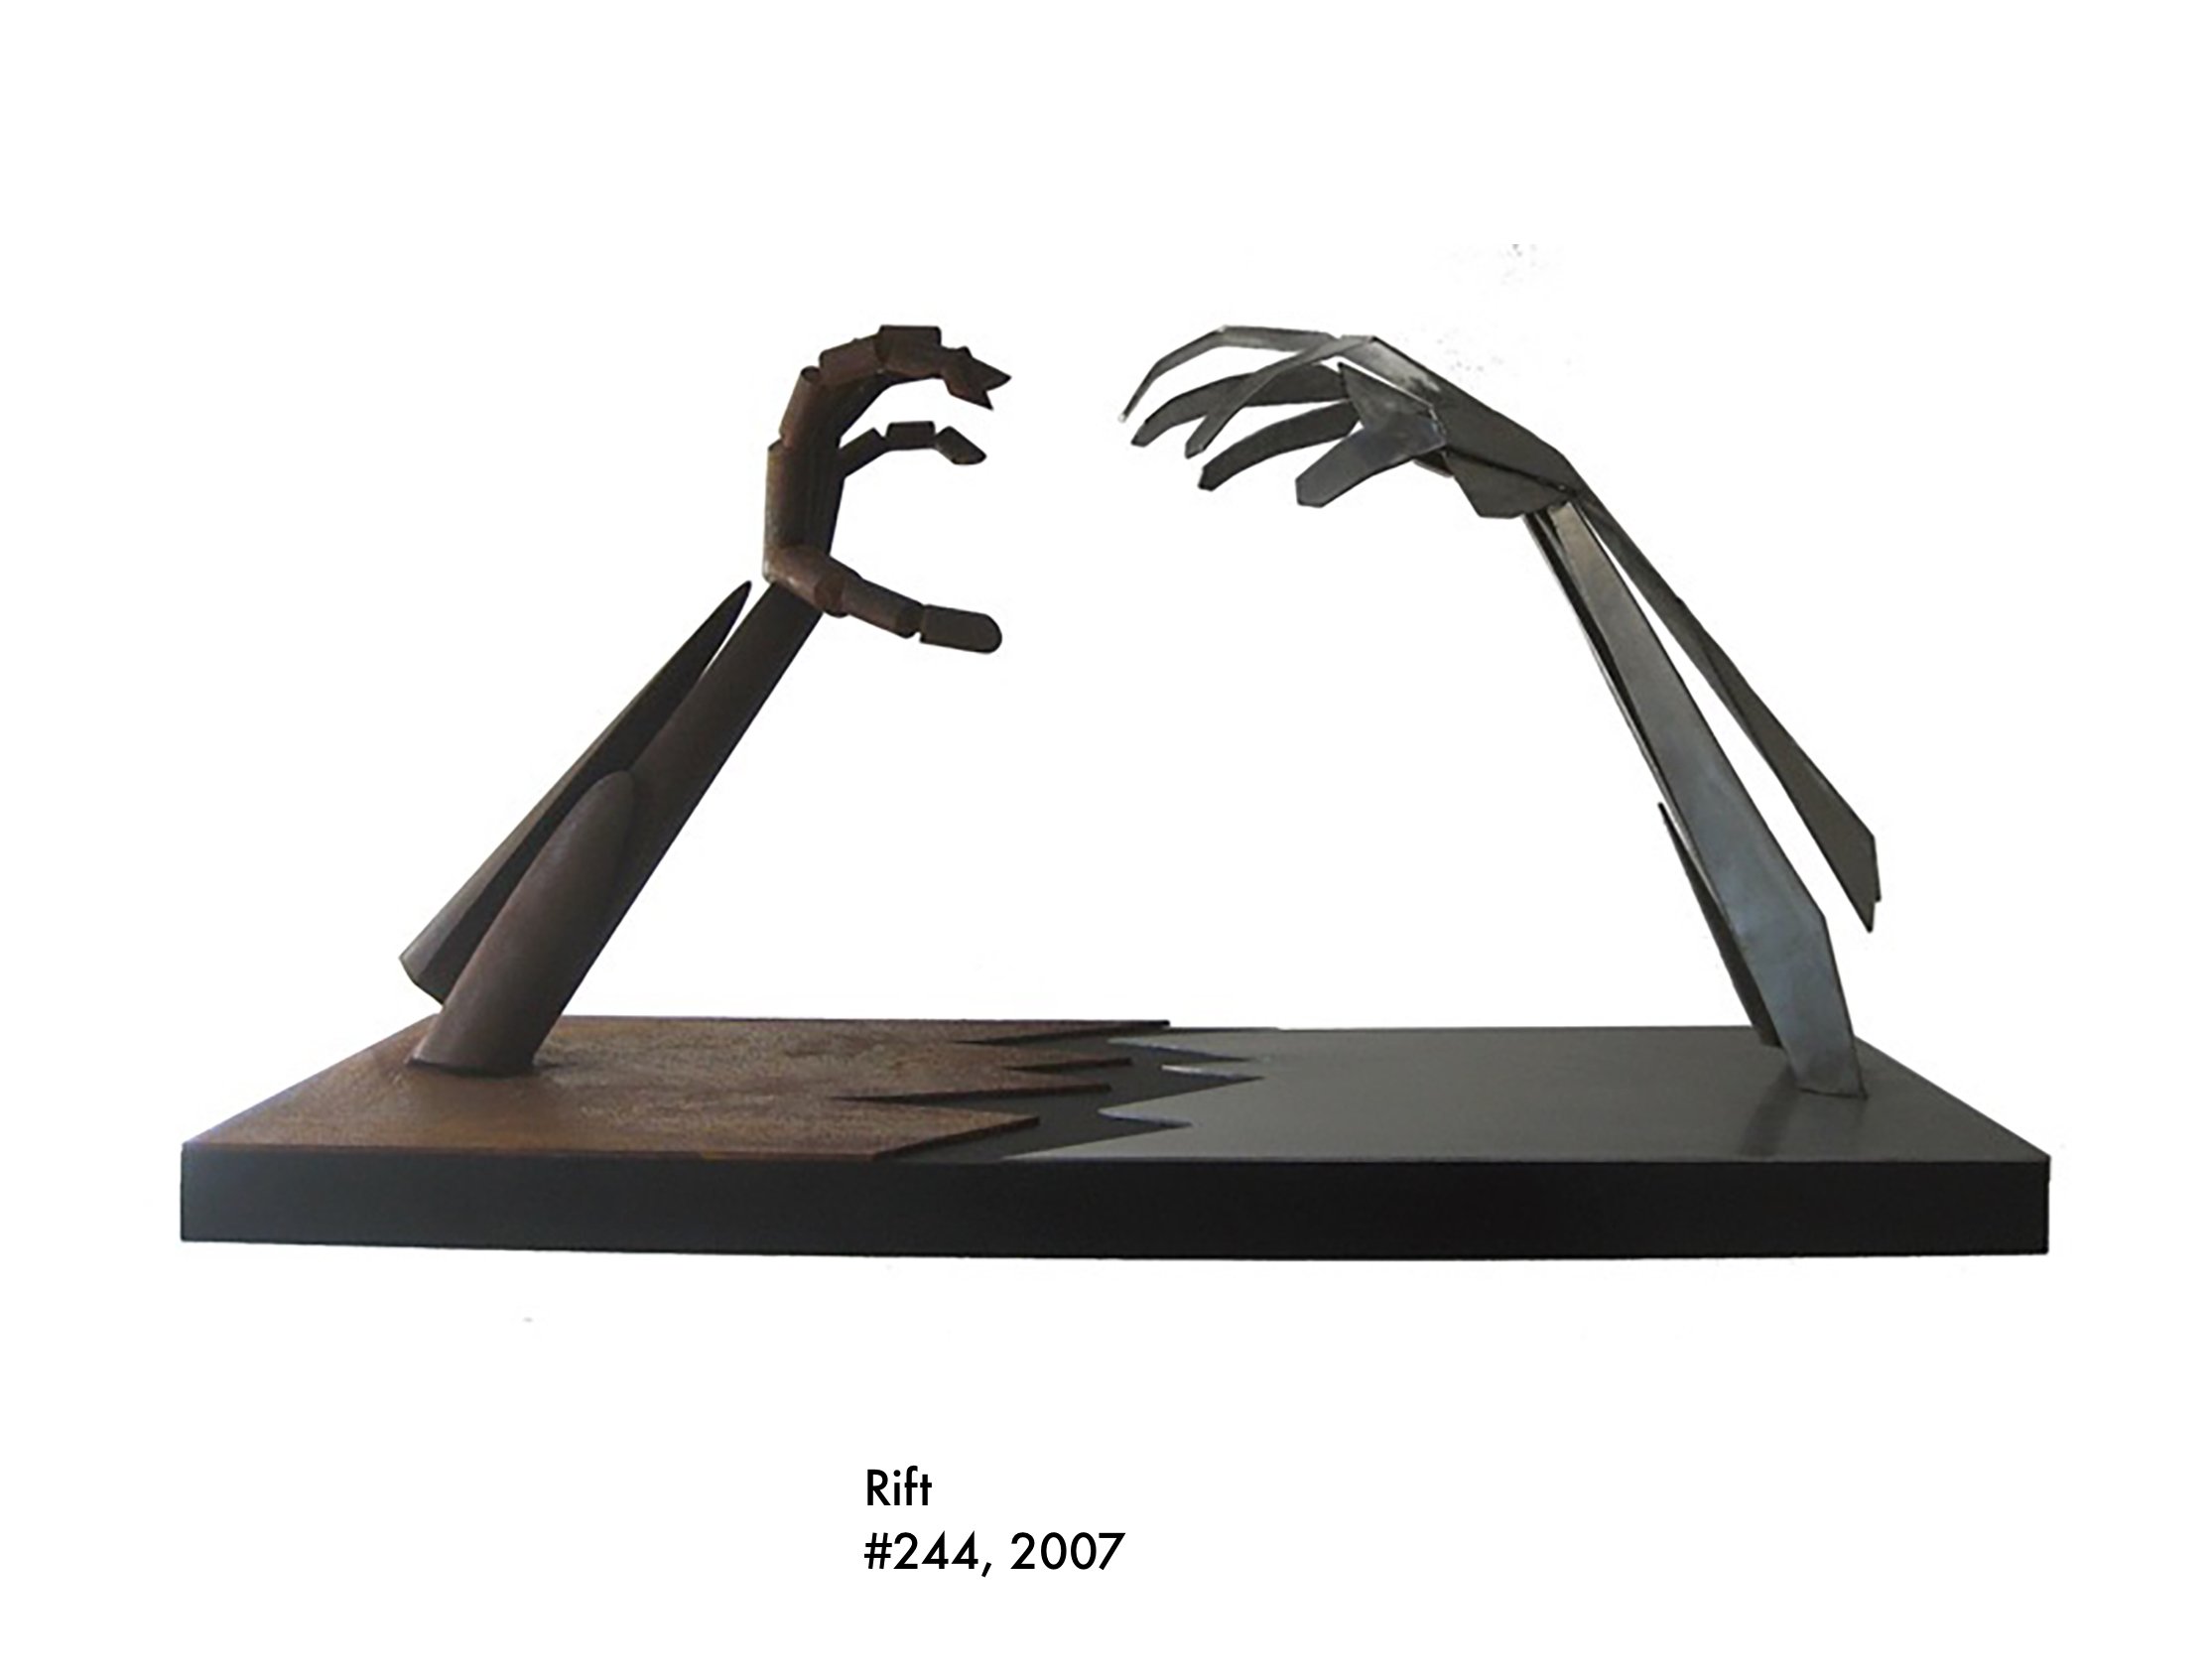 Rift, 2007, bronze, #244